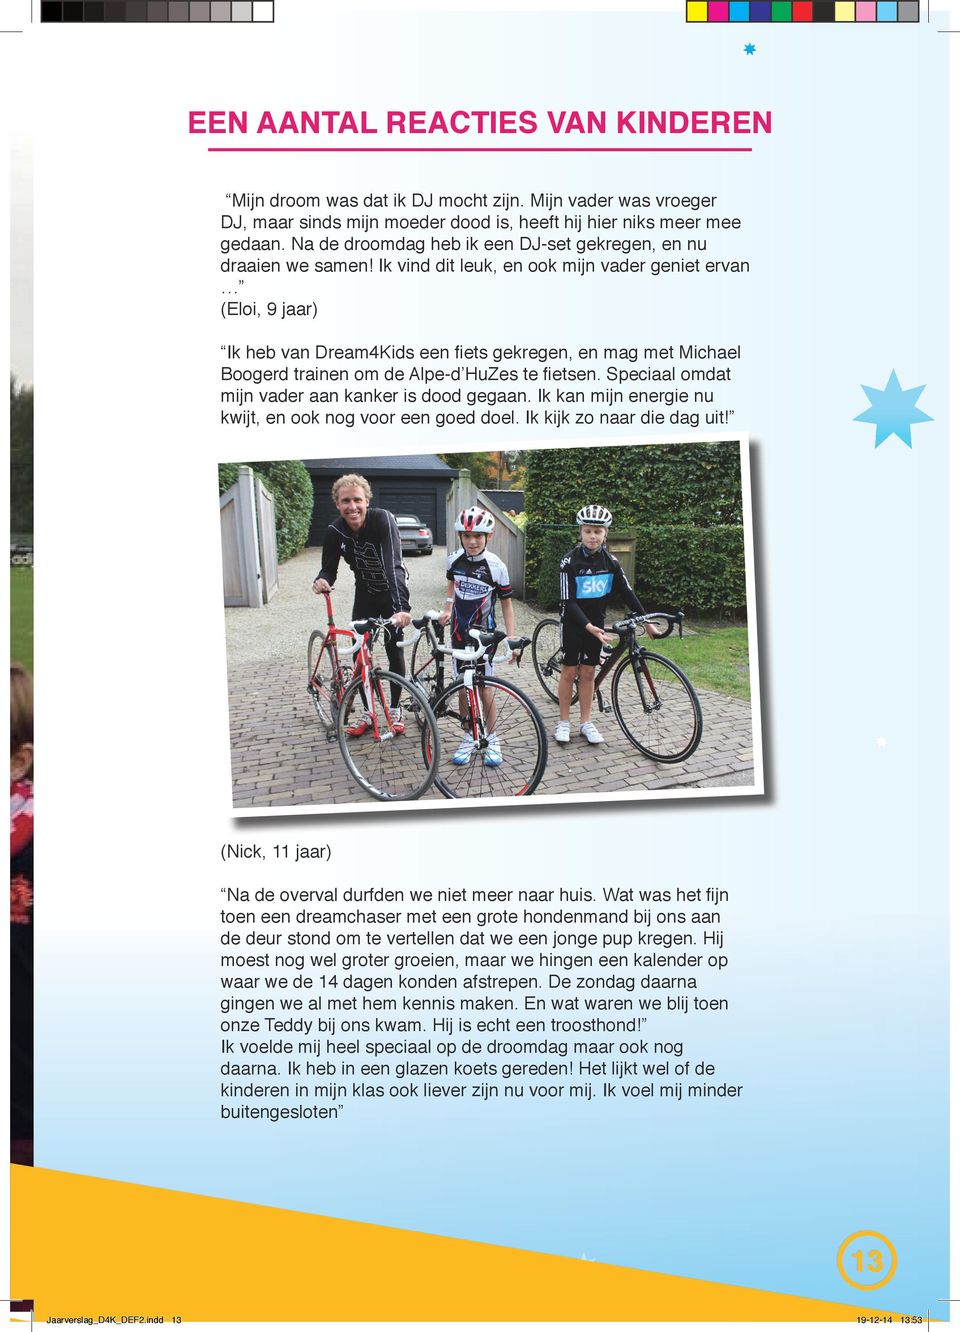 Ik vind dit leuk, en ook mijn vader geniet ervan (Eloi, 9 jaar) Ik heb van Dream4Kids een fiets gekregen, en mag met Michael Boogerd trainen om de Alpe-d HuZes te fietsen.